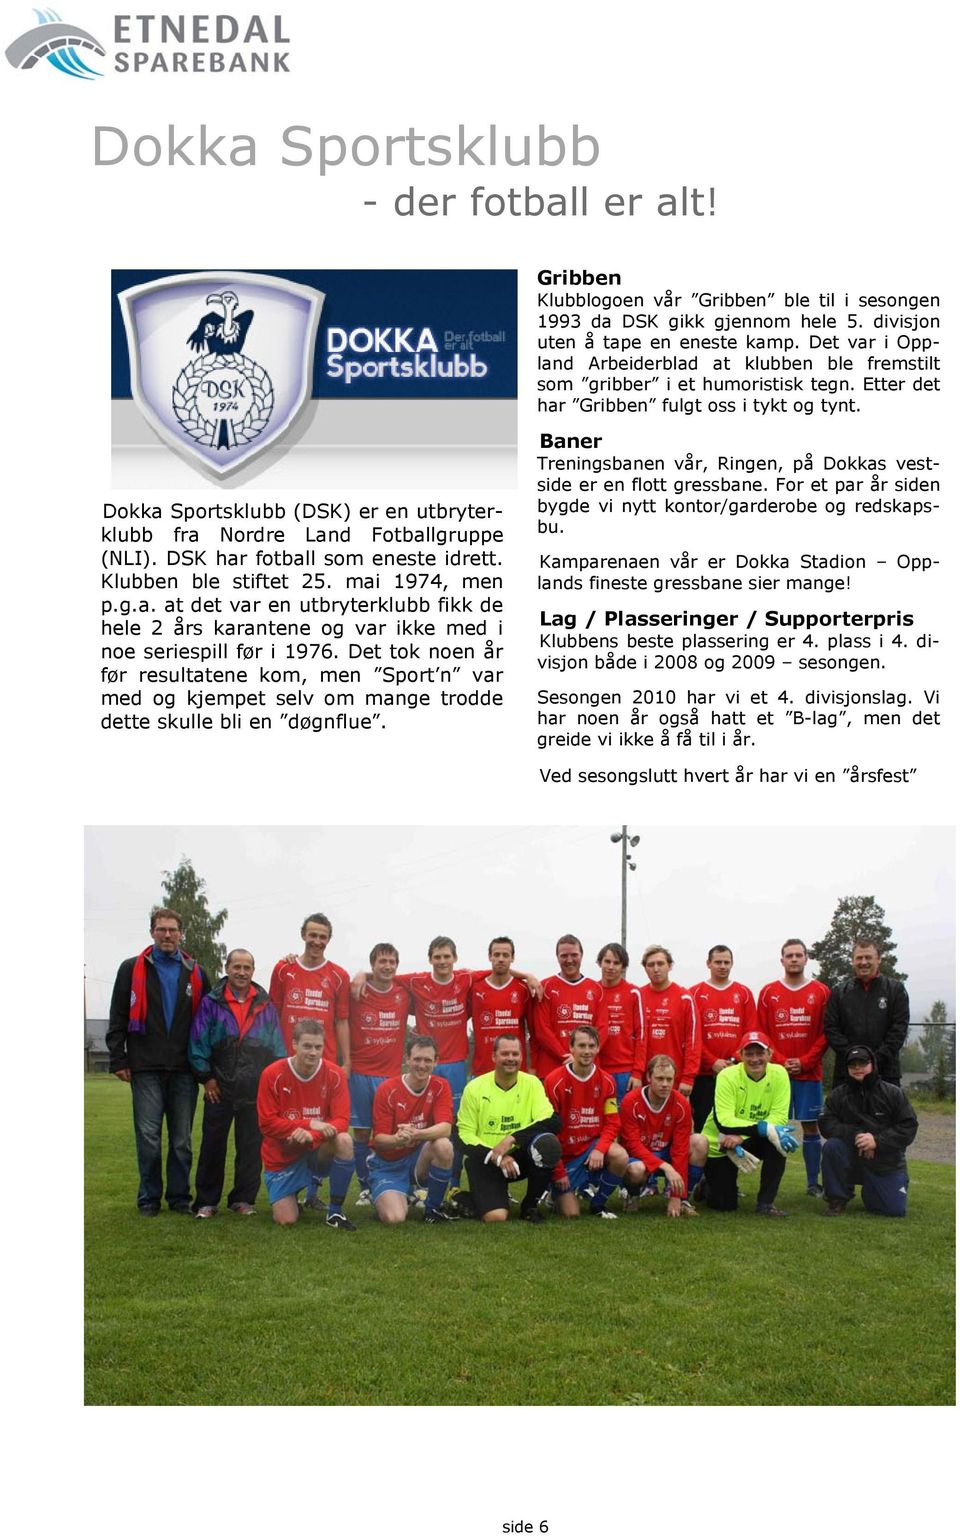 Dokka Sportsklubb (DSK) er en utbryterklubb fra Nordre Land Fotballgruppe (NLI). DSK har fotball som eneste idrett. Klubben ble stiftet 25. mai 1974, men p.g.a. at det var en utbryterklubb fikk de hele 2 års karantene og var ikke med i noe seriespill før i 1976.